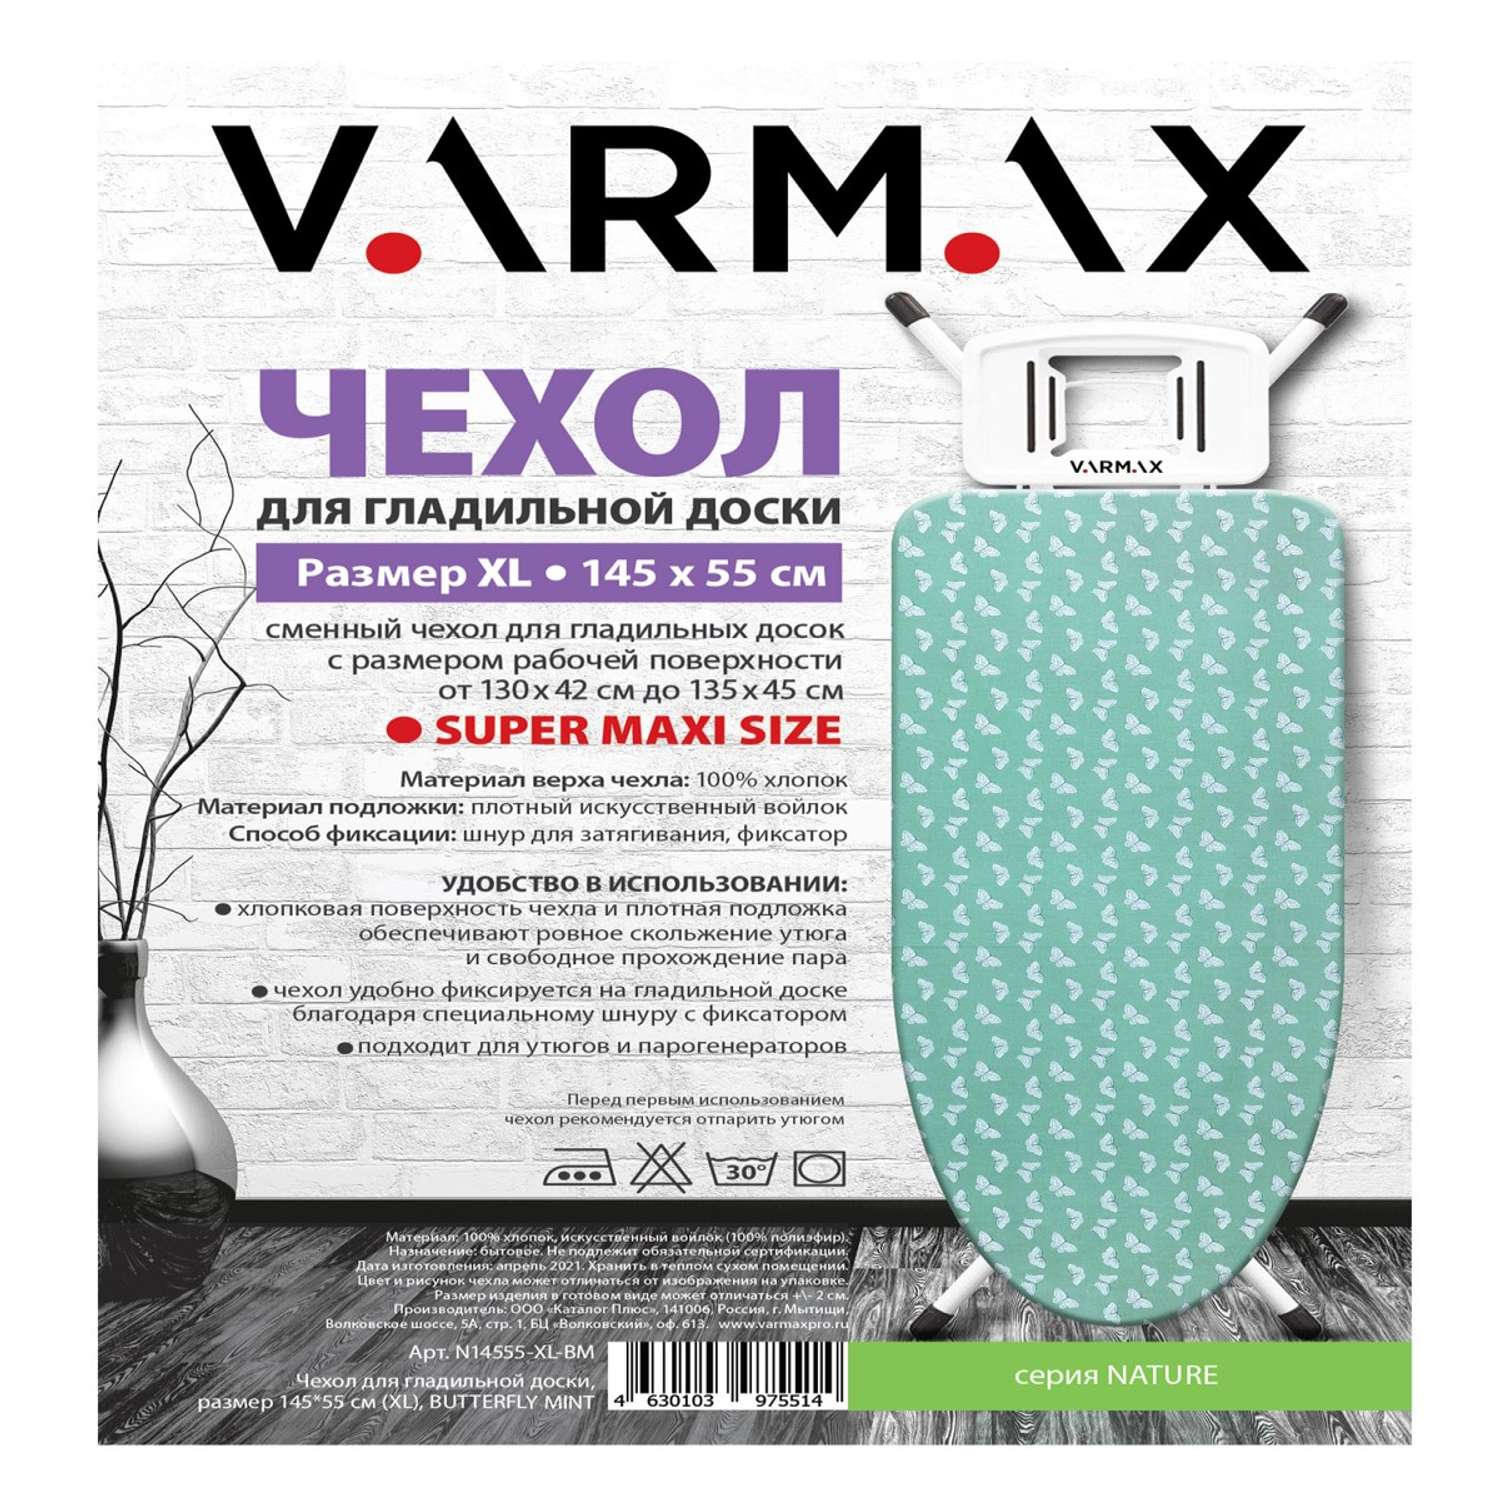 Чехол для гладильной доски Varmax 145*55 см XL butterfly mint - фото 2